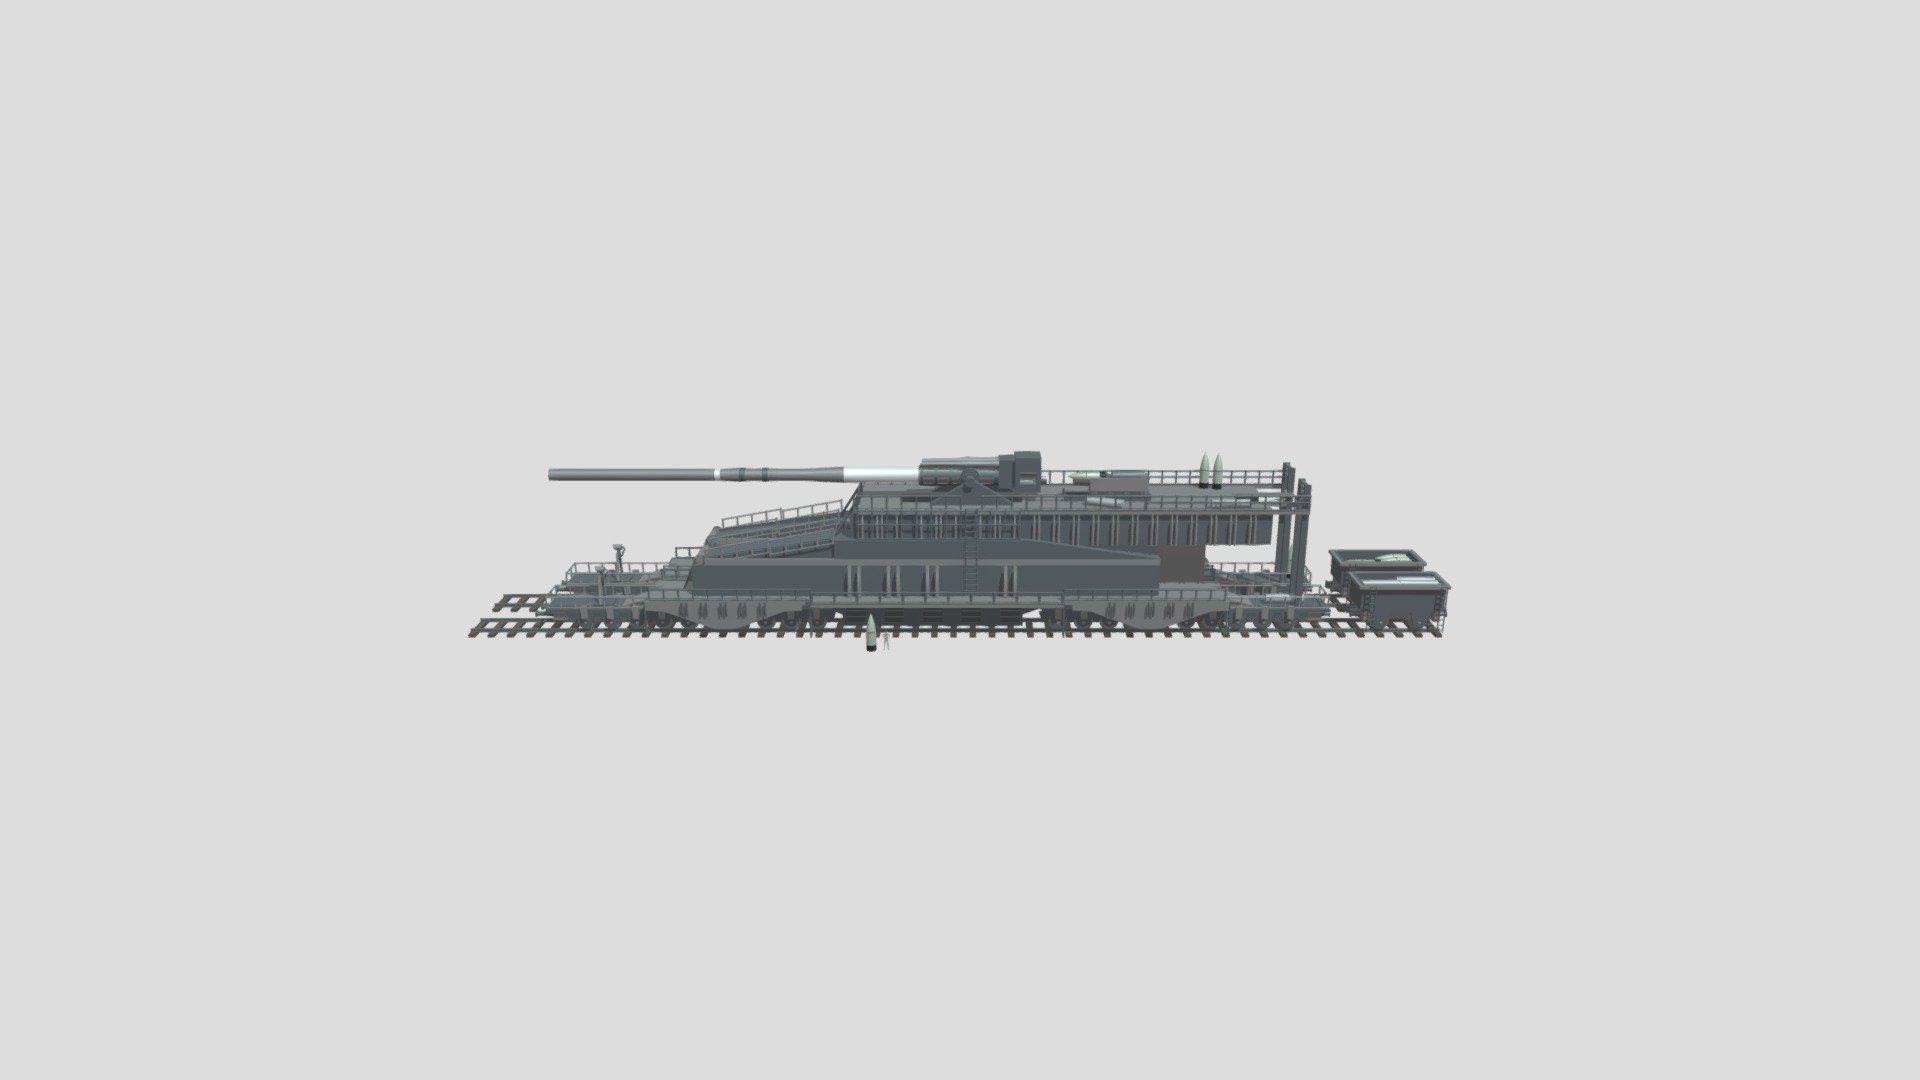 Schwerer Gustav [2K] - Buy Royalty Free 3D model by Andrej Grave